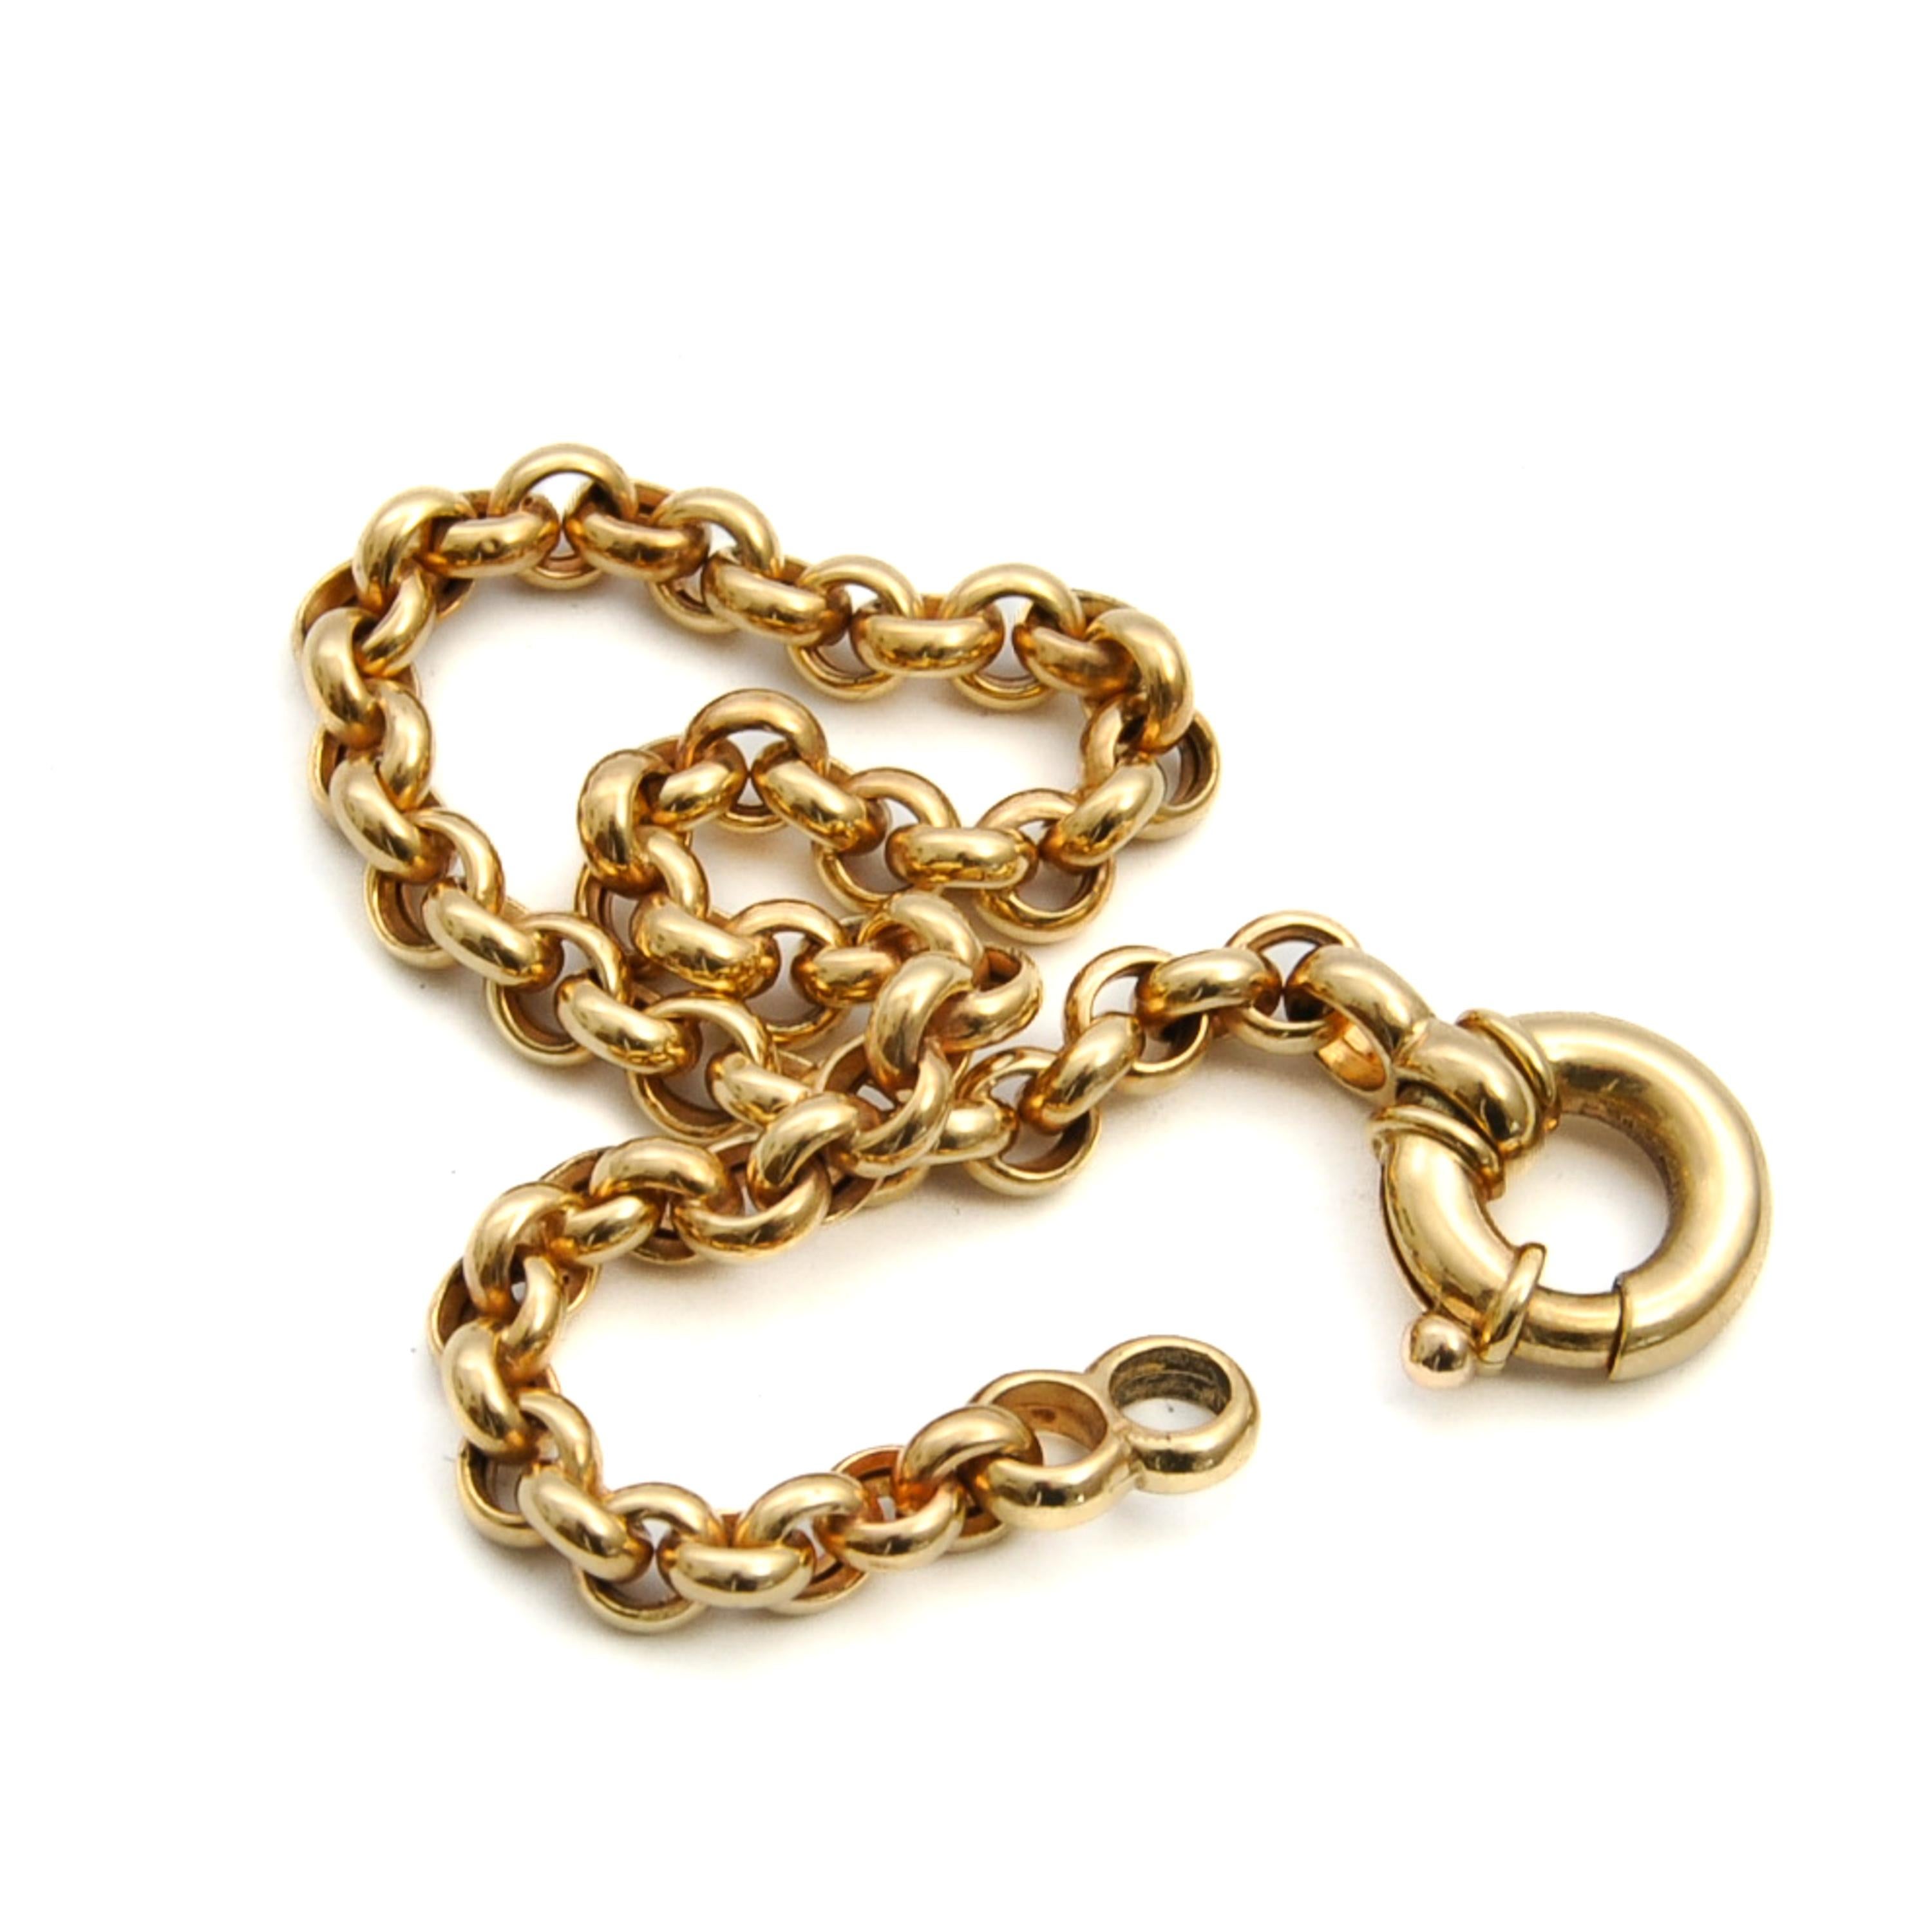 Eine schöne Vintage 14 Karat Gold Seemann Federring rolo Kette Armband. Jedes runde Glied hat einen perfekten Schliff und die Glieder sind zu dieser schönen Kette verwoben. Das Armband kann allein oder in Kombination mit Ihren anderen